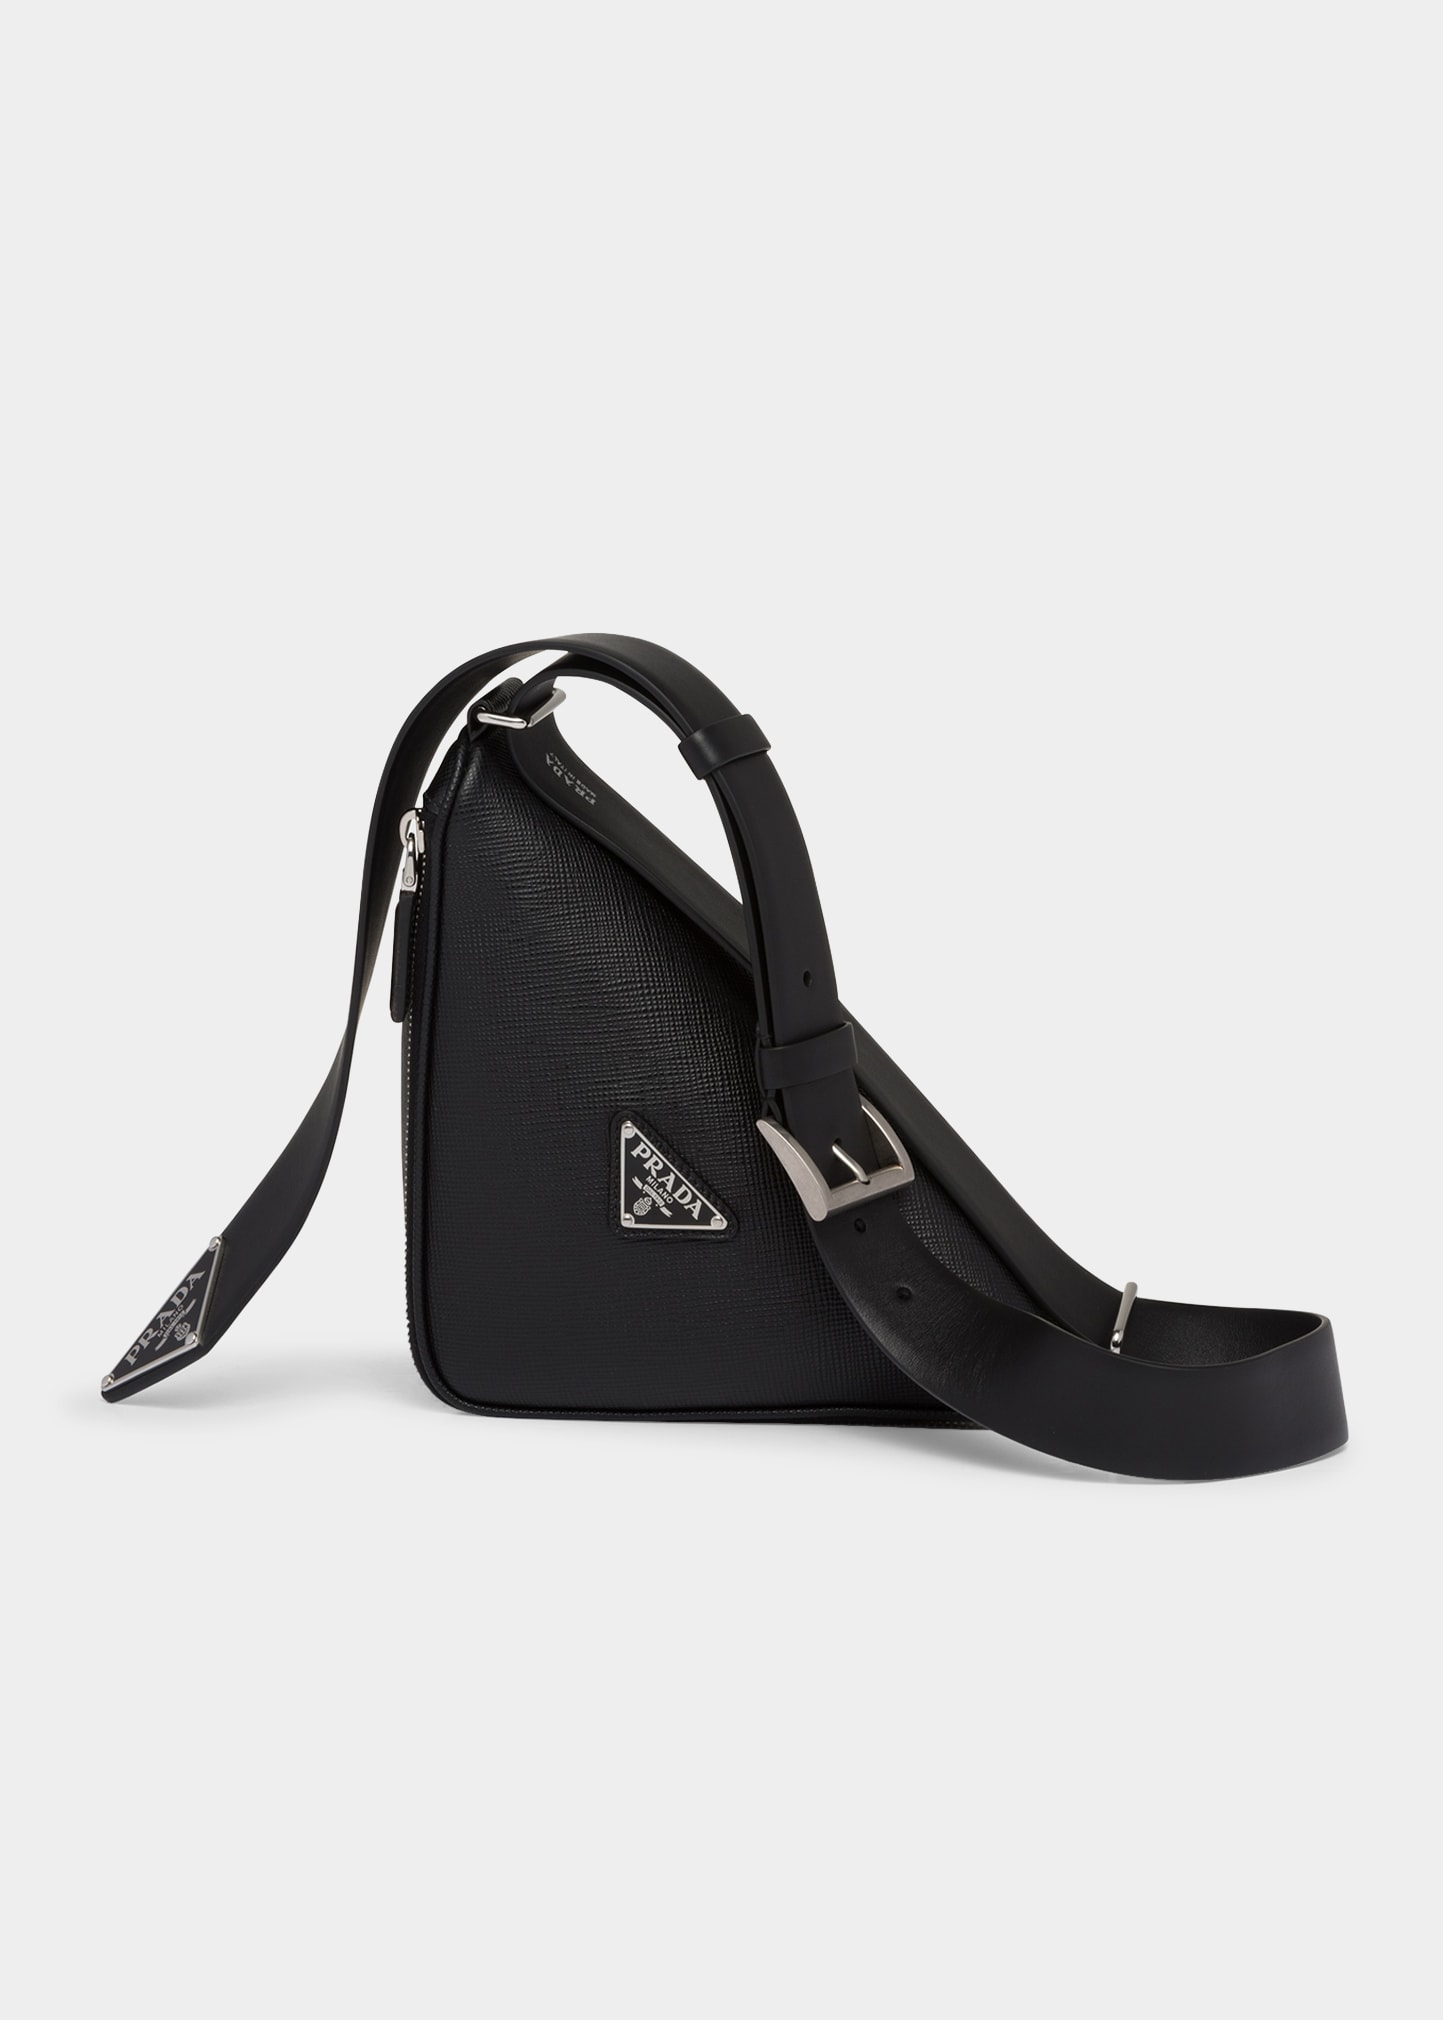 PRADA Belt Bags for Men | ModeSens